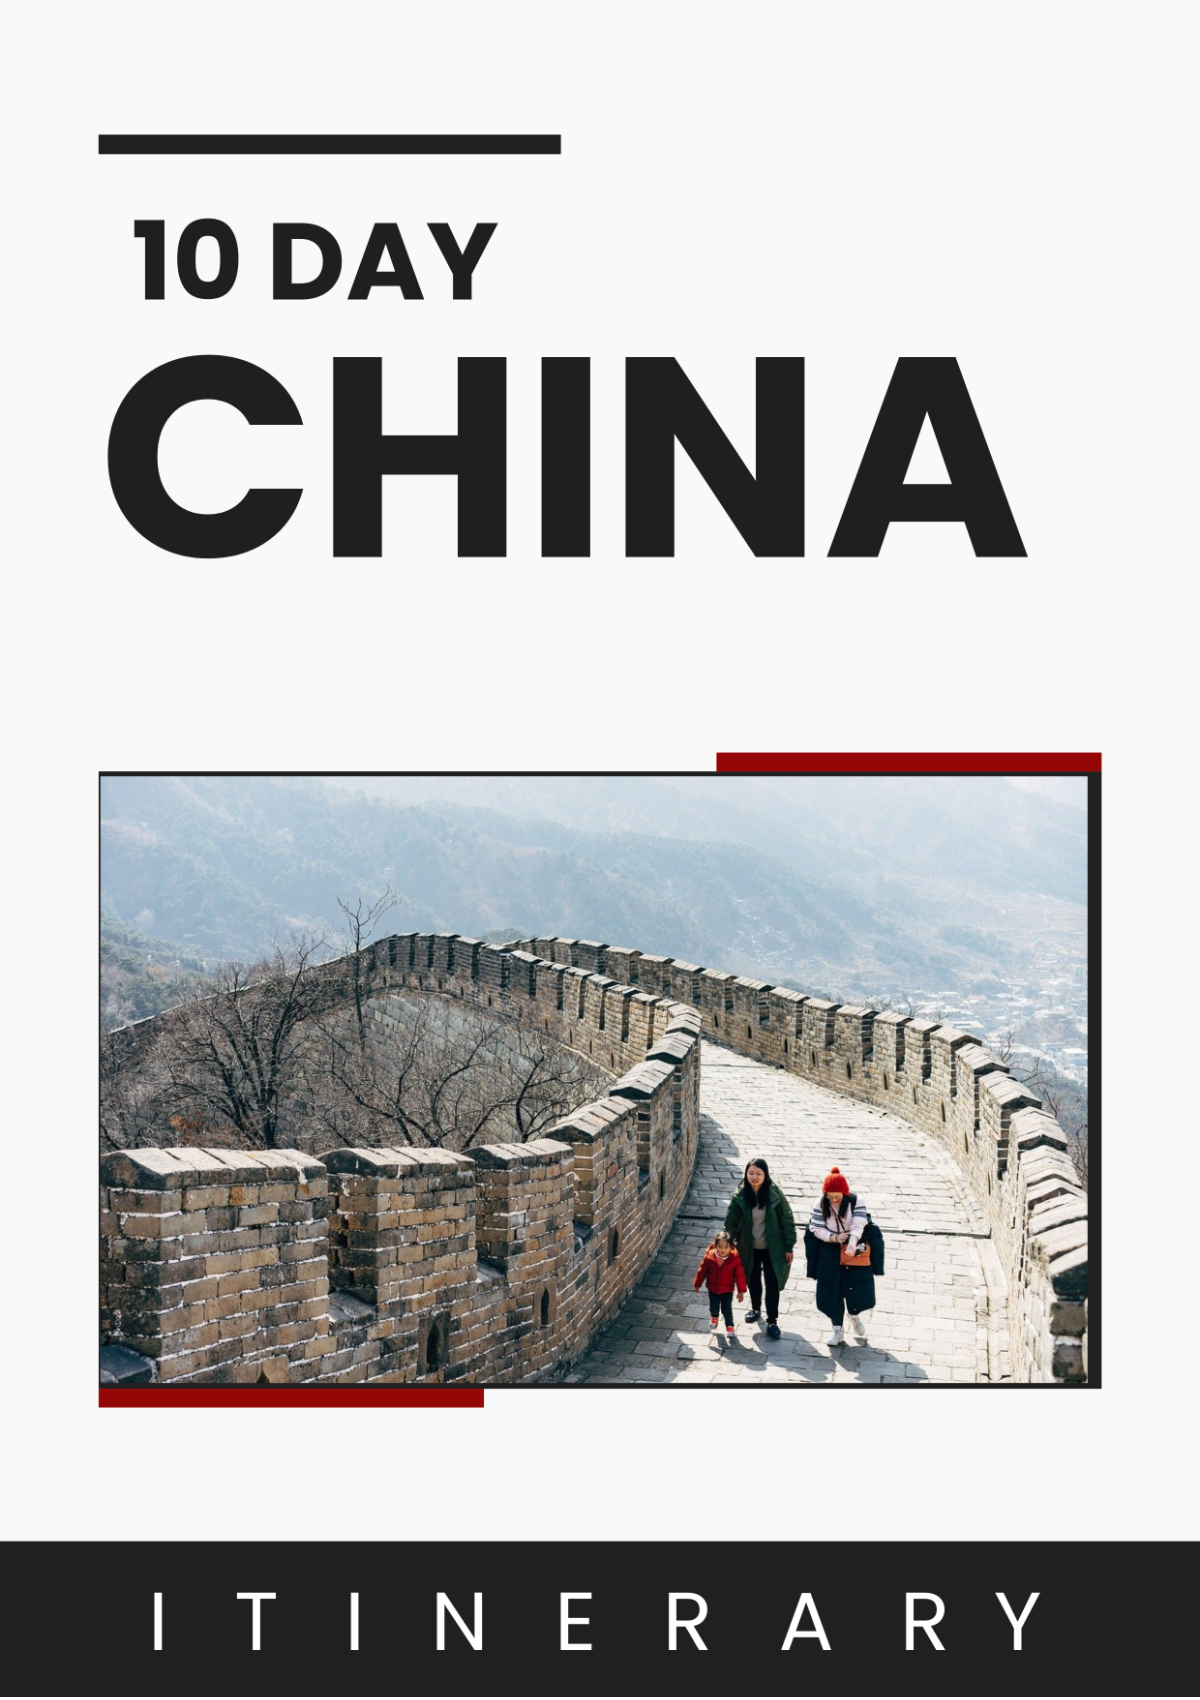 Free 10 Day China Itinerary Template